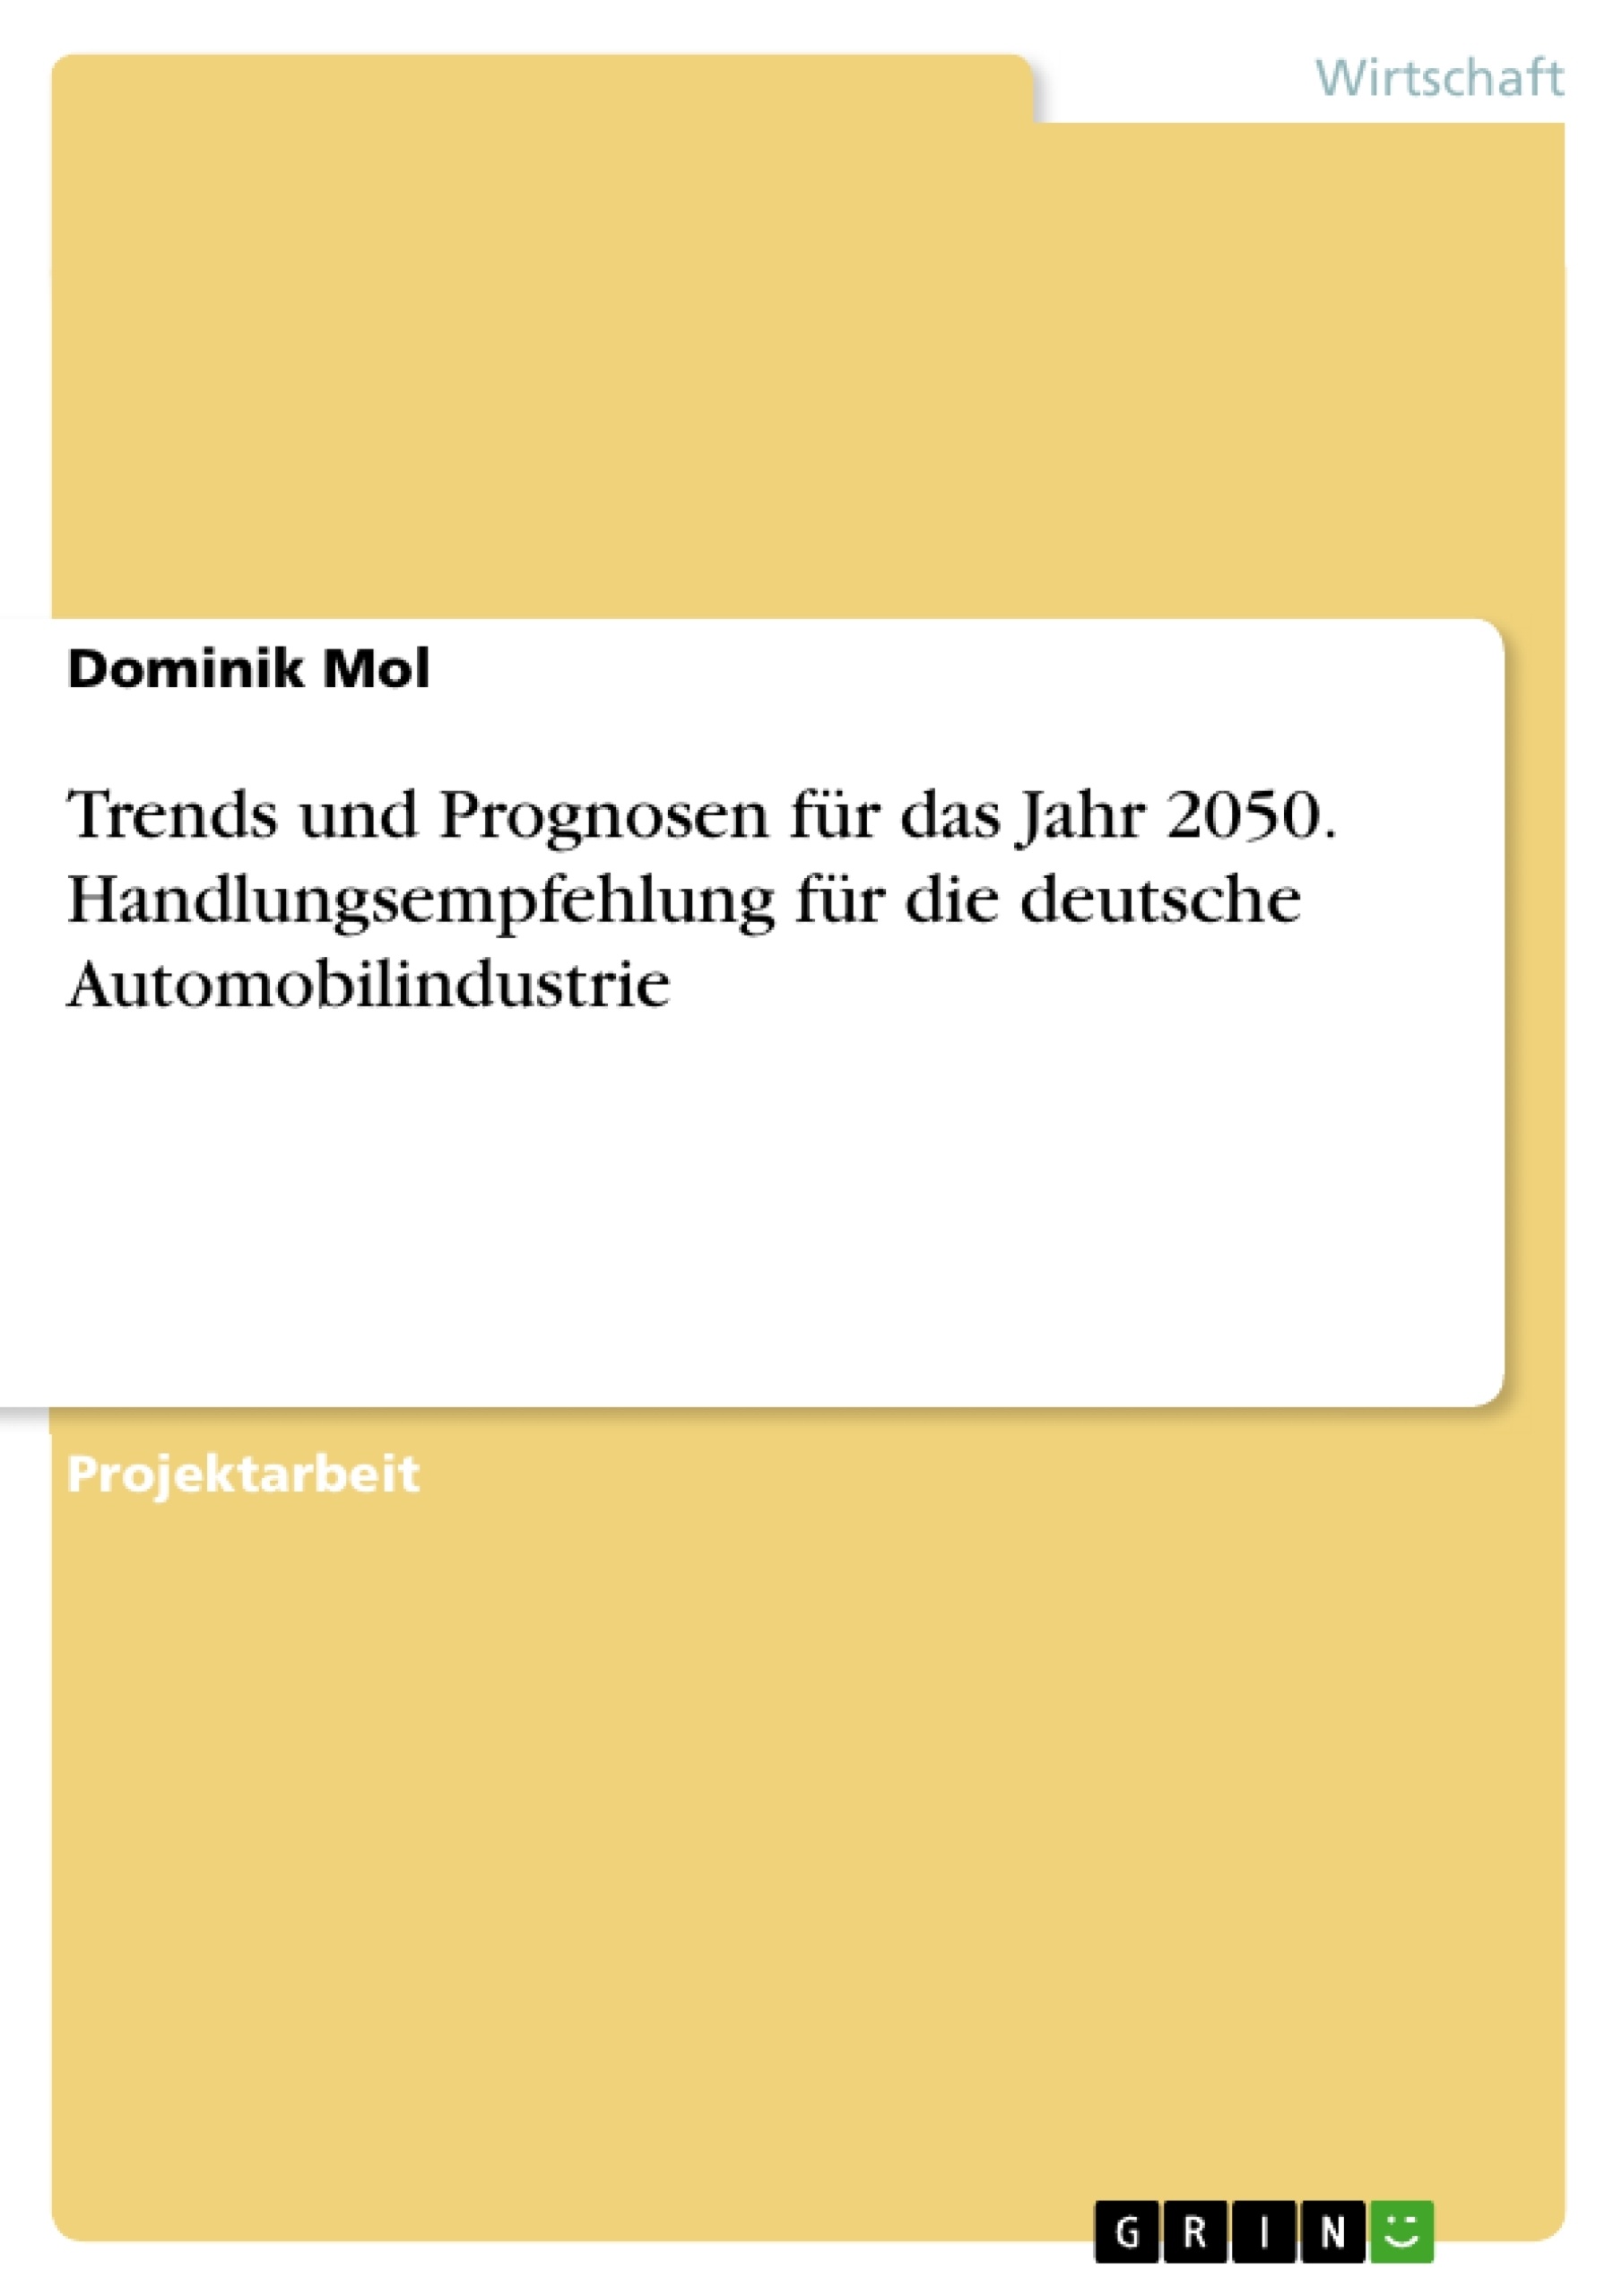 Titel: Trends und Prognosen für das Jahr 2050. Handlungsempfehlung für die deutsche Automobilindustrie